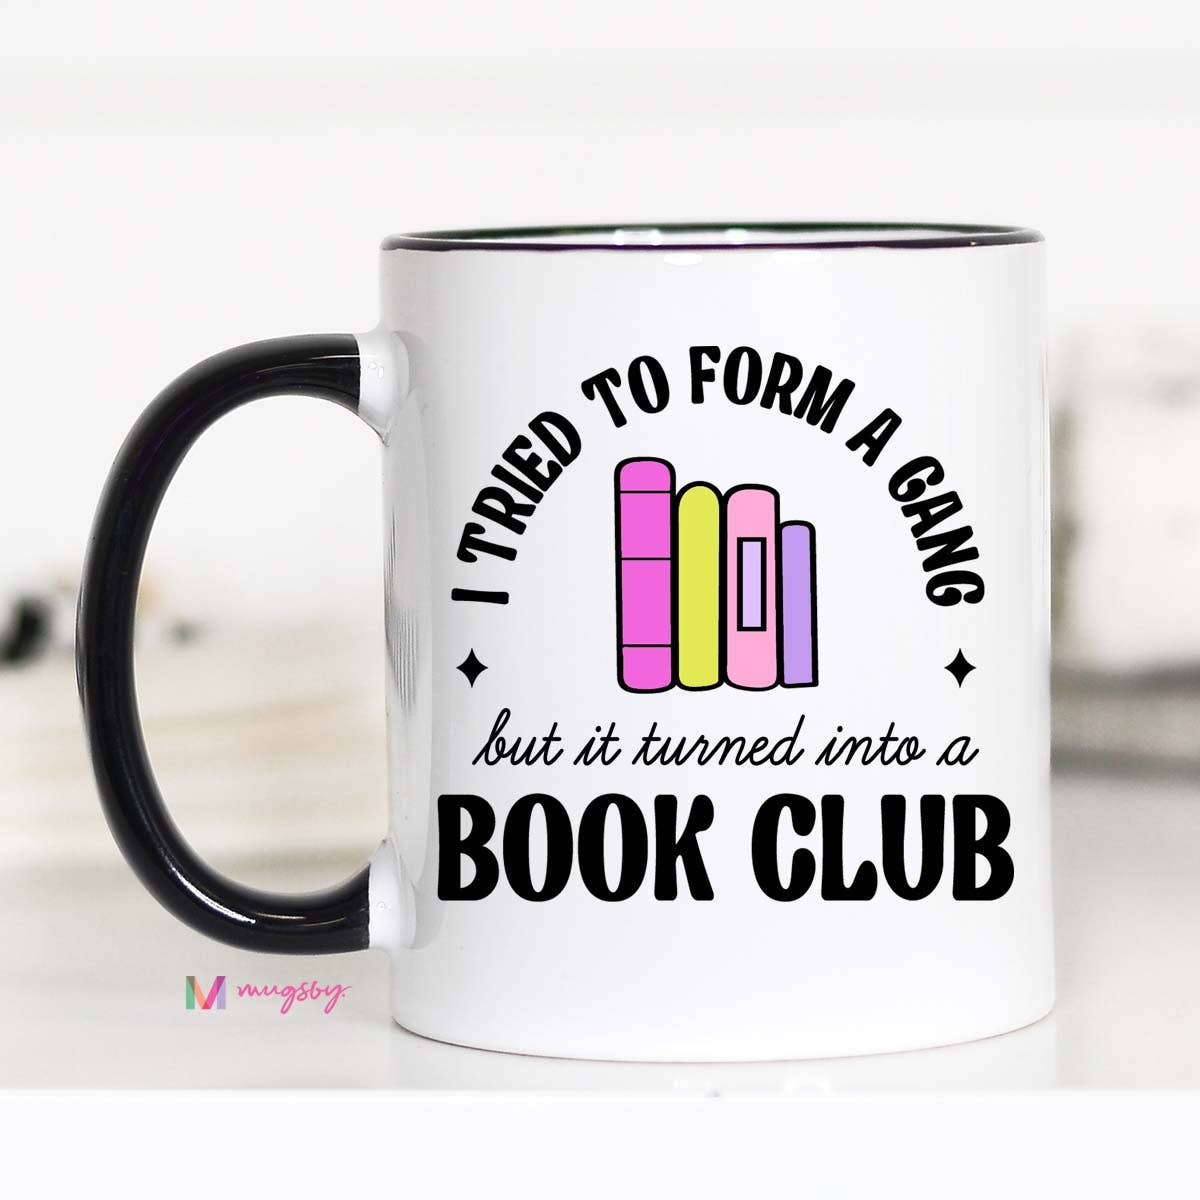 I Tried to Form a Gang Book Club Coffee Mug, Funny Book Mug: 11oz